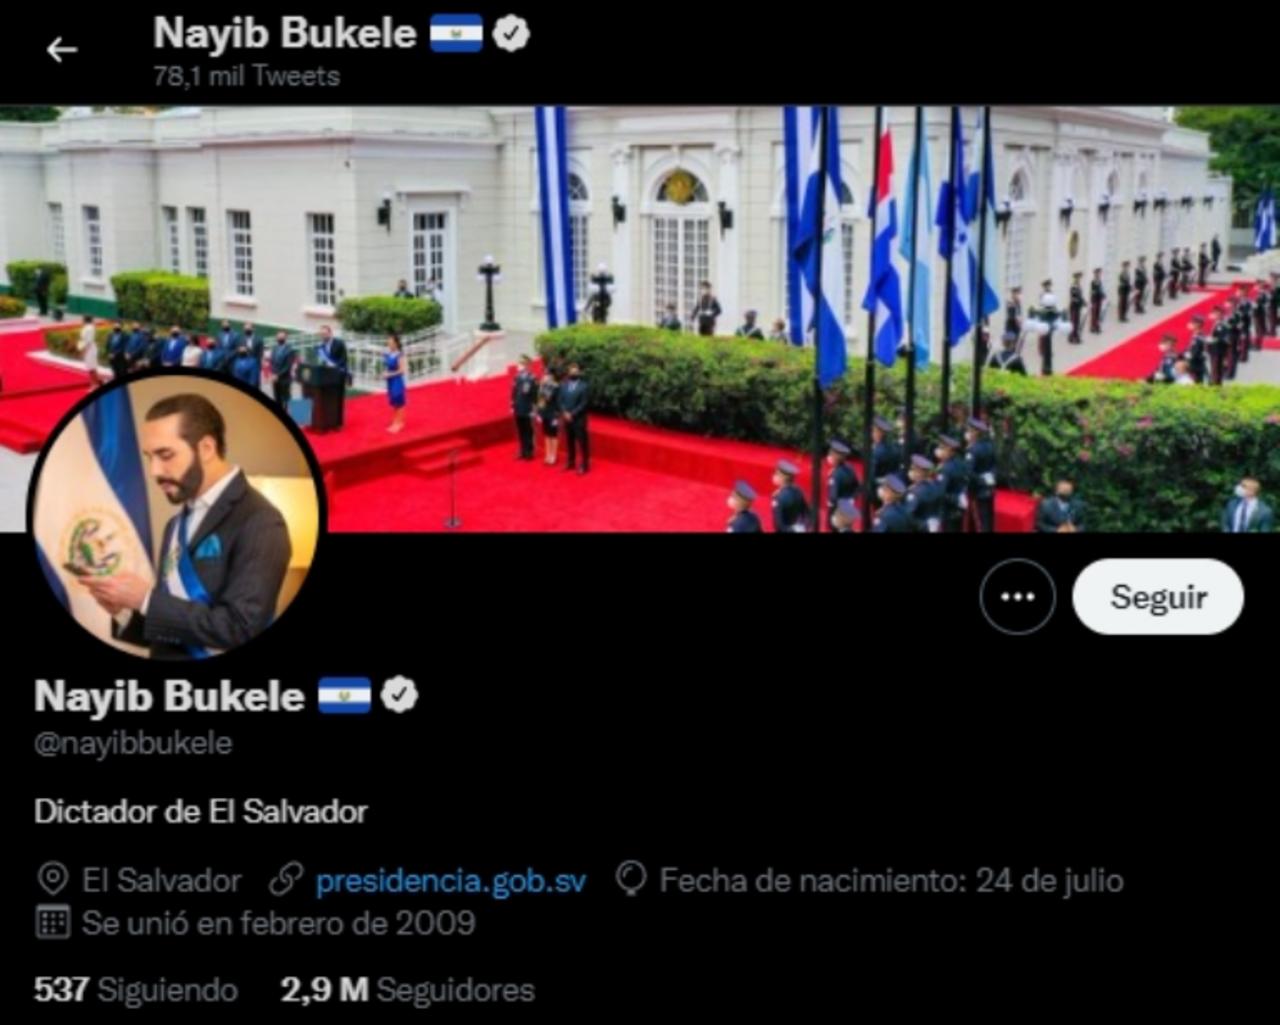 El Presidente Nayib Bukele Escribe En Su Biografía De Twitter Dictador De El Salvador 0149